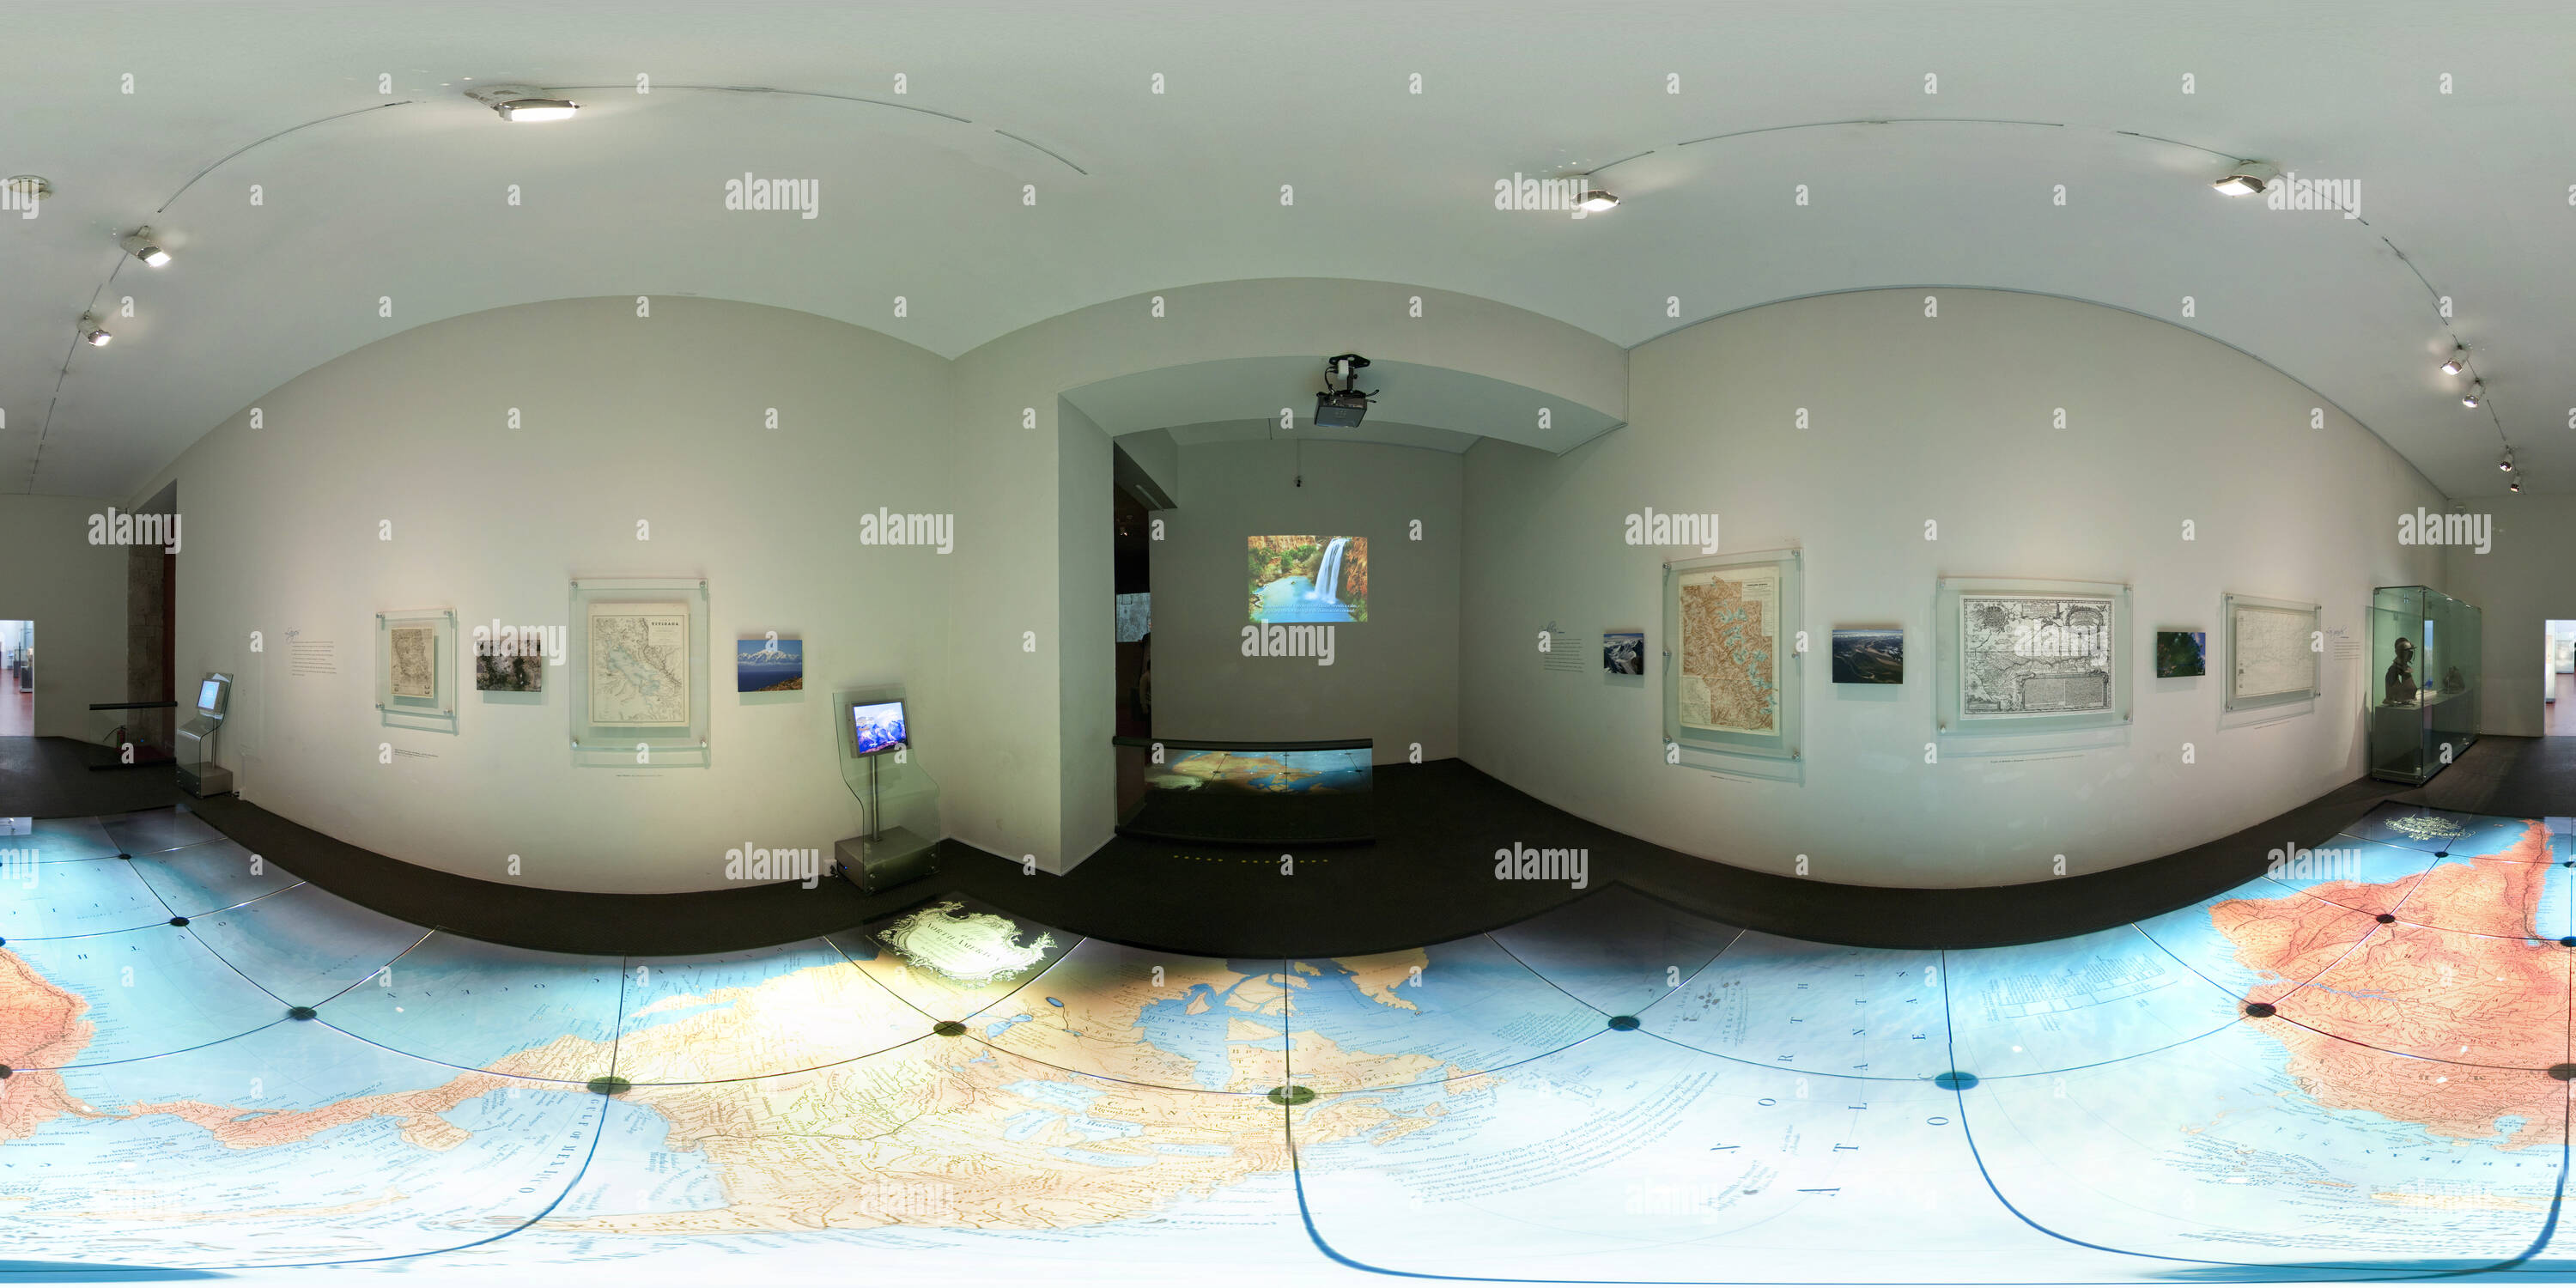 imagen horizontal del mapa del mundo hecho de corcho pegado en la pared de  la sala de estar Fotografía de stock - Alamy